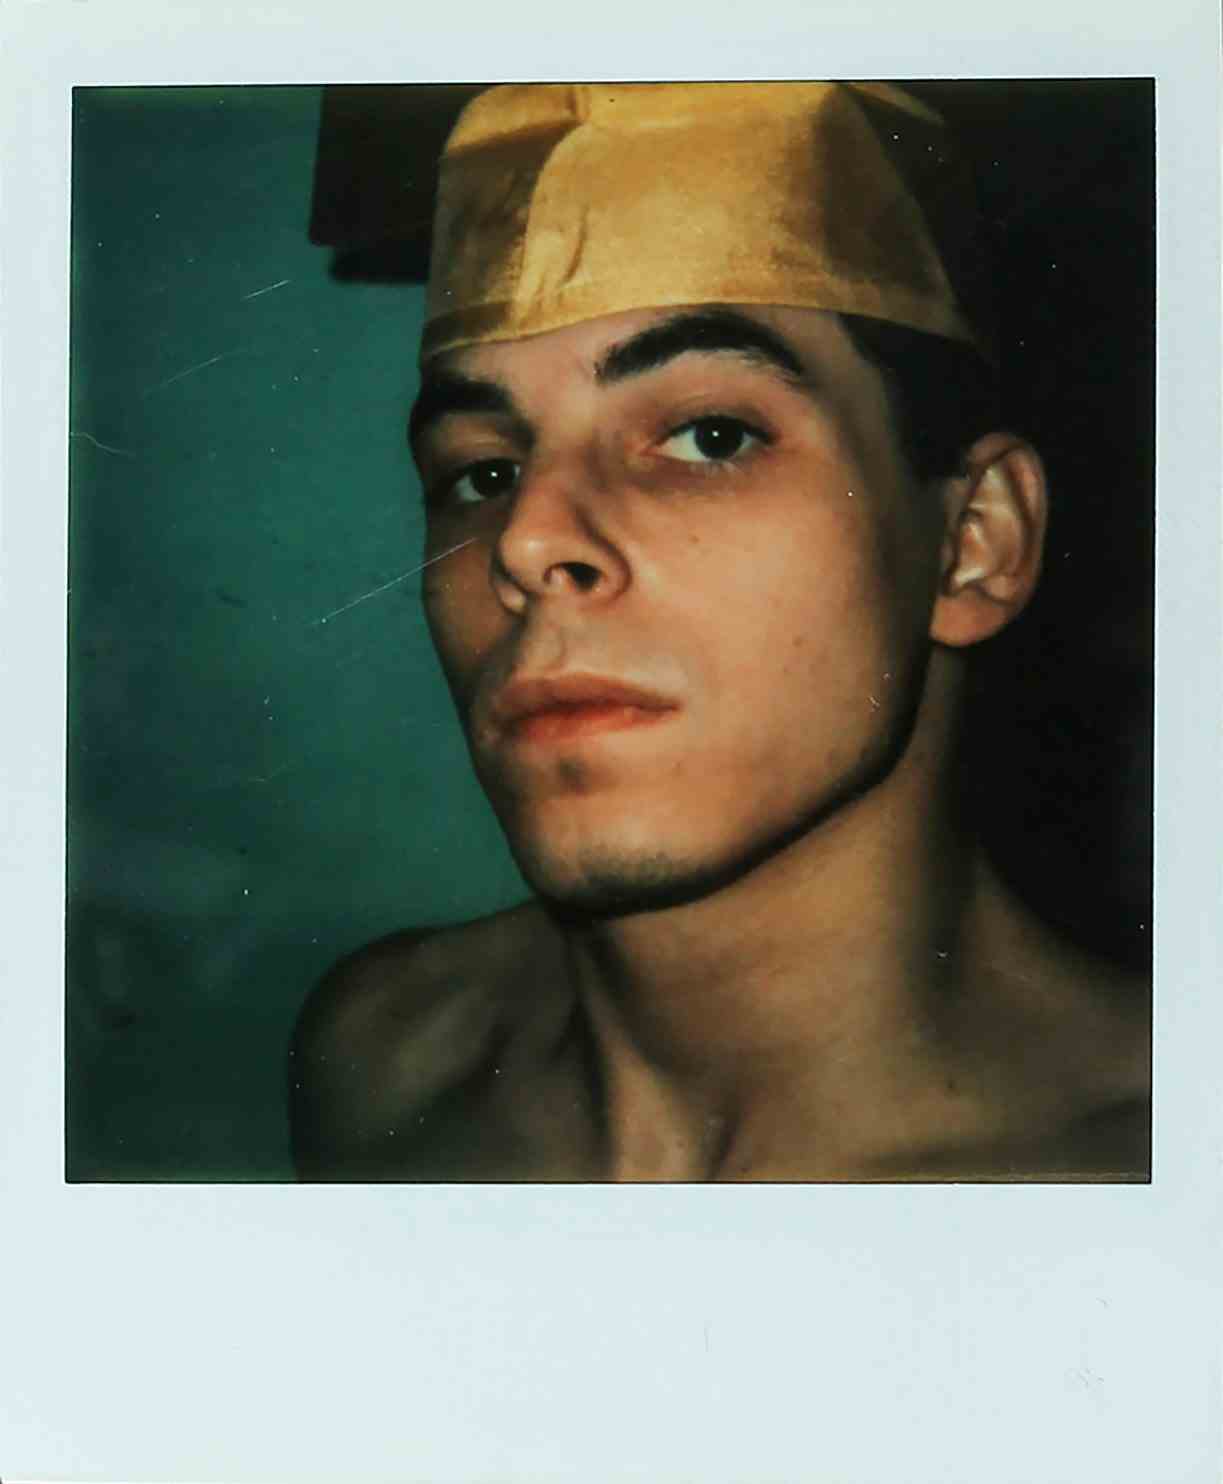 Ein Polaroidfoto einer hemdlosen Person mit Abschlusskappe.